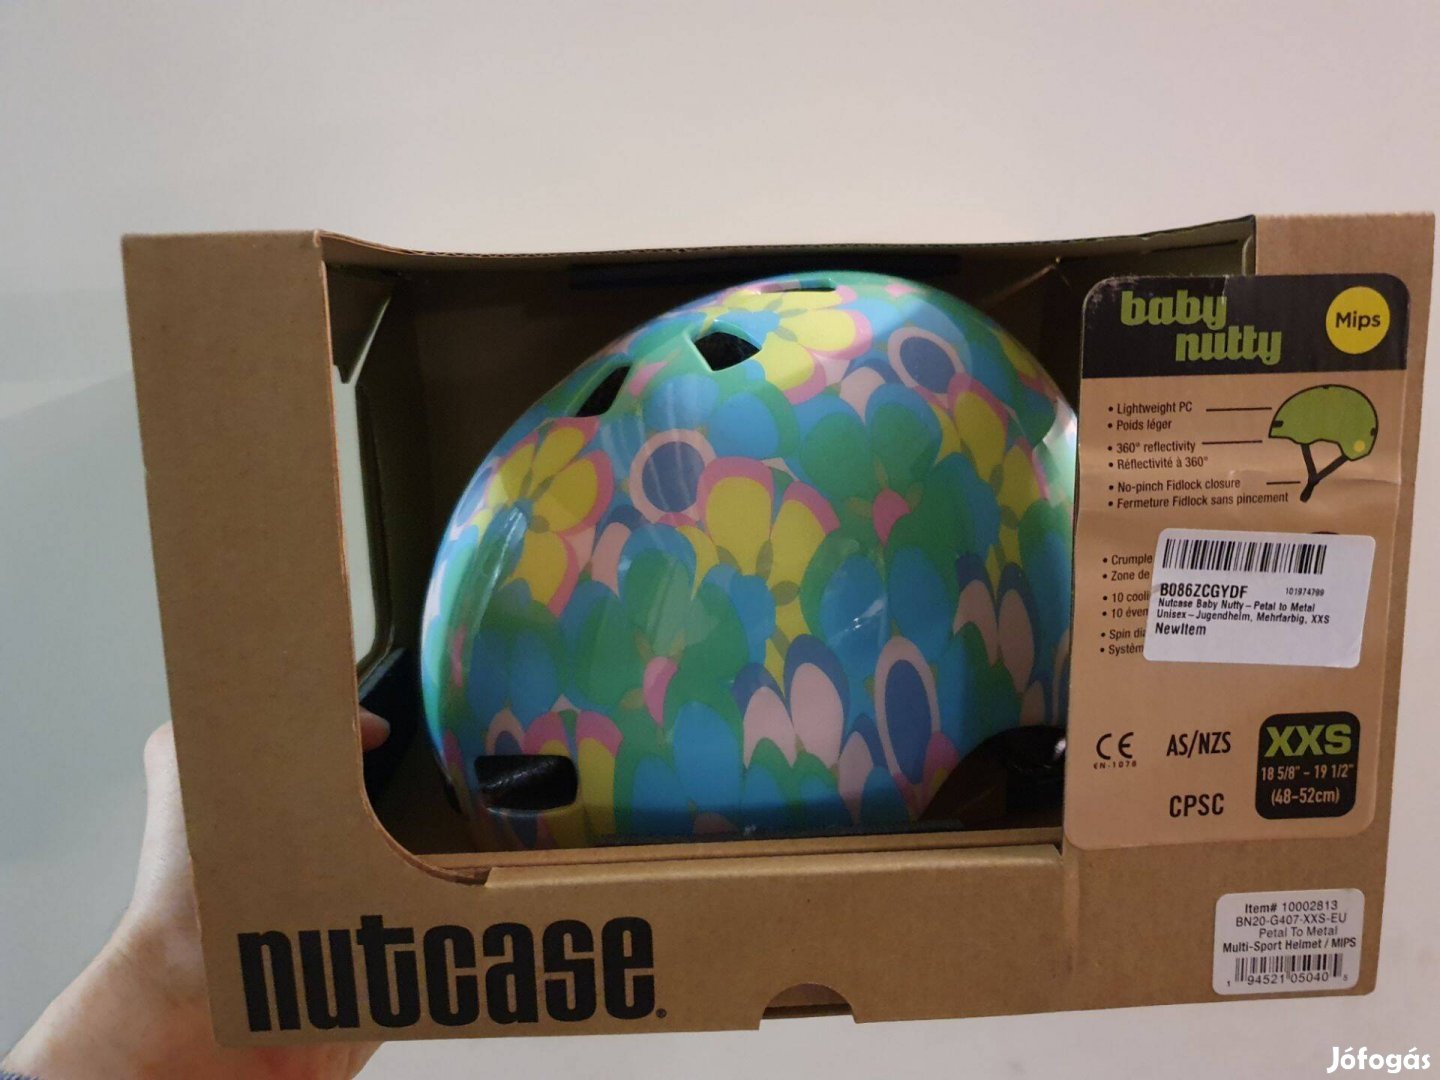 Új baba bukósisak: Nutcase Baby Nutty Xxs (48-52 cm) eladó